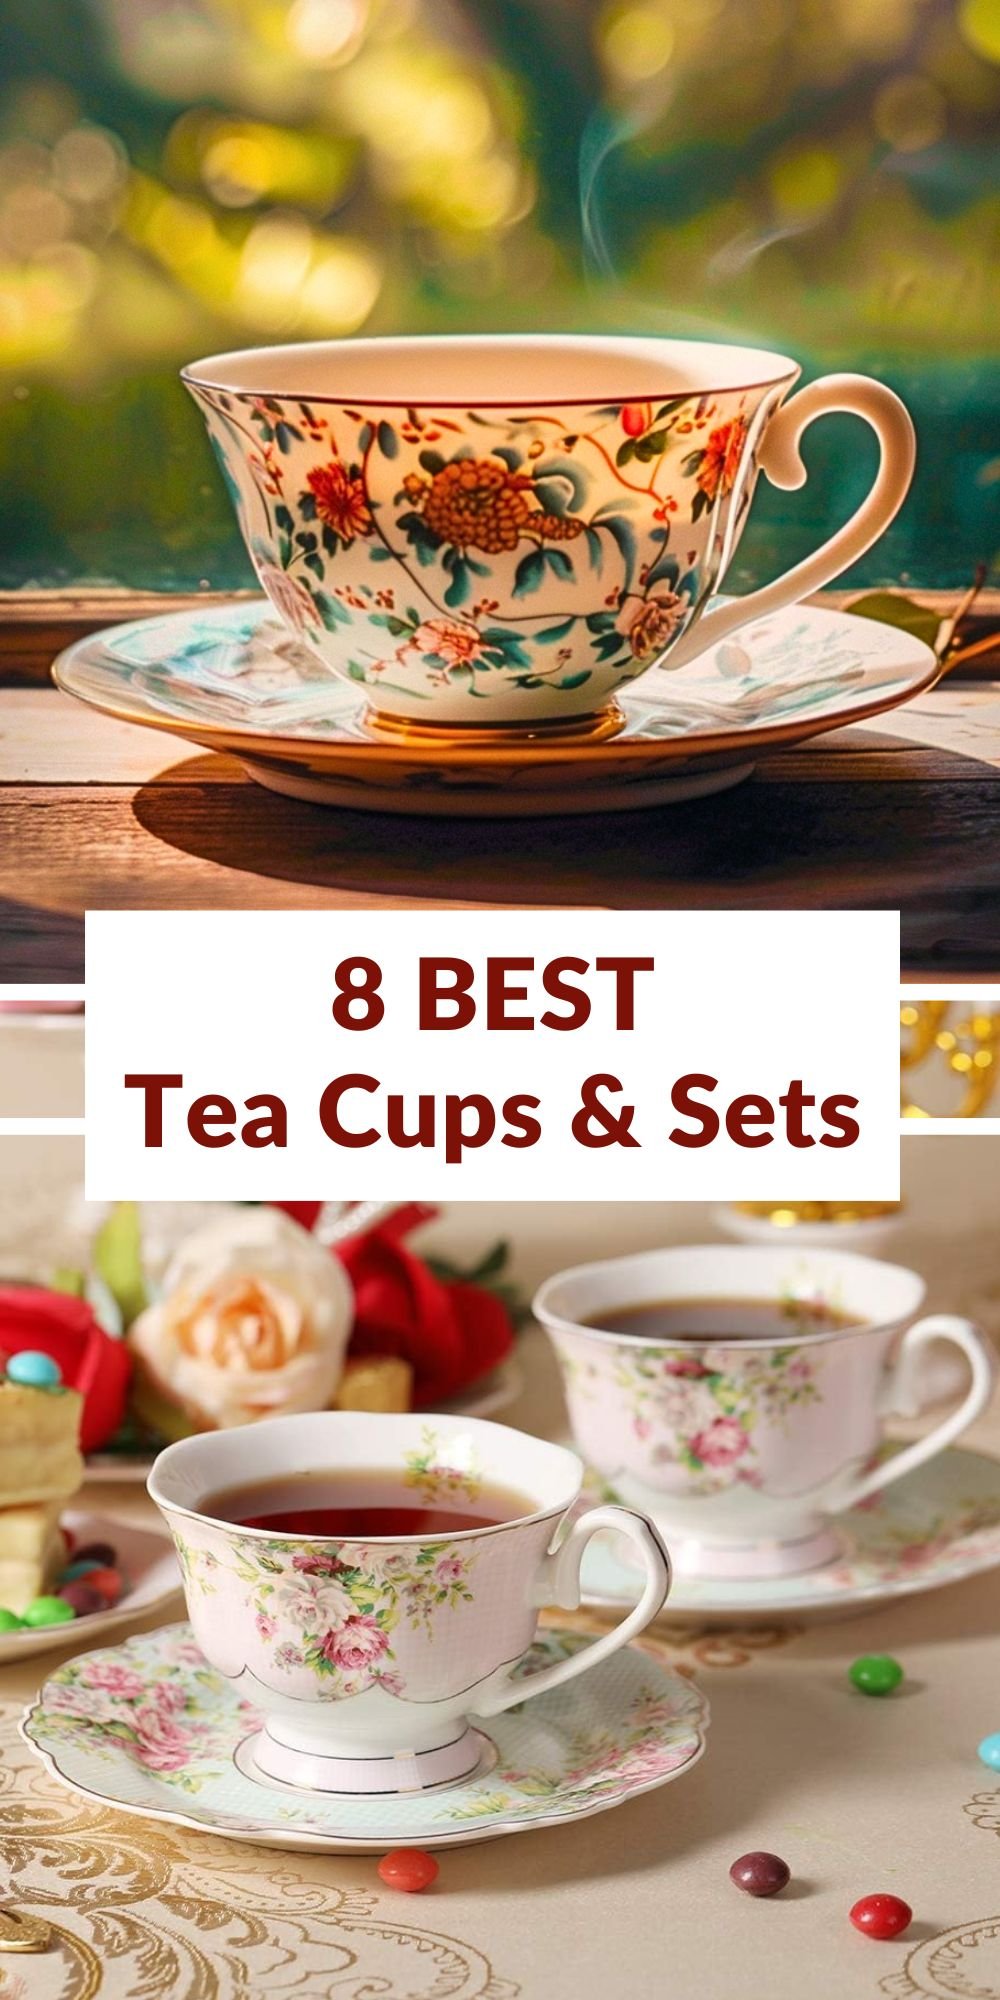 8 best Tea Cups & Sets